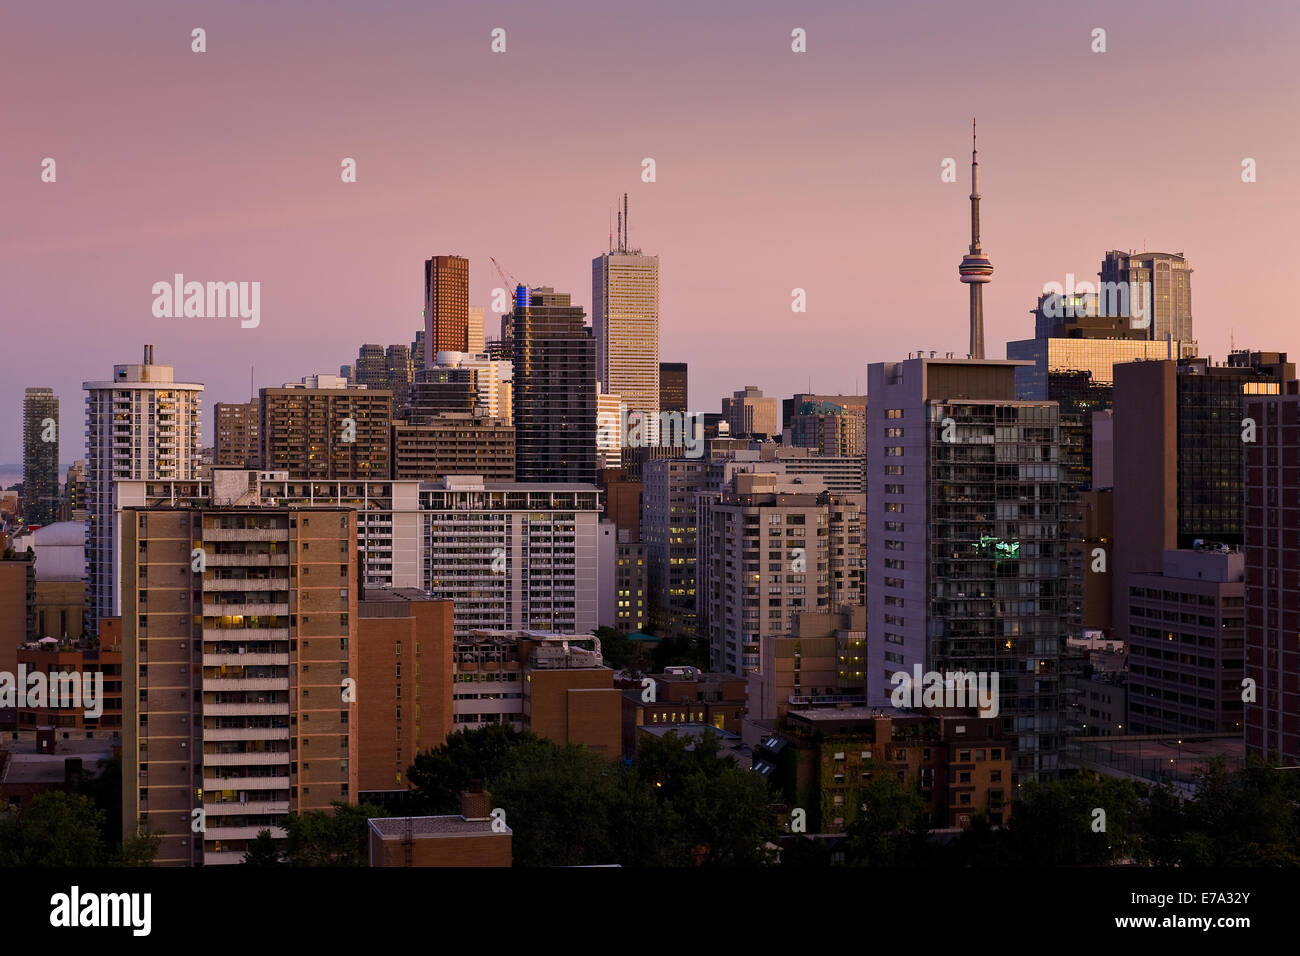 Le centre-ville de Toronto au crépuscule Banque D'Images